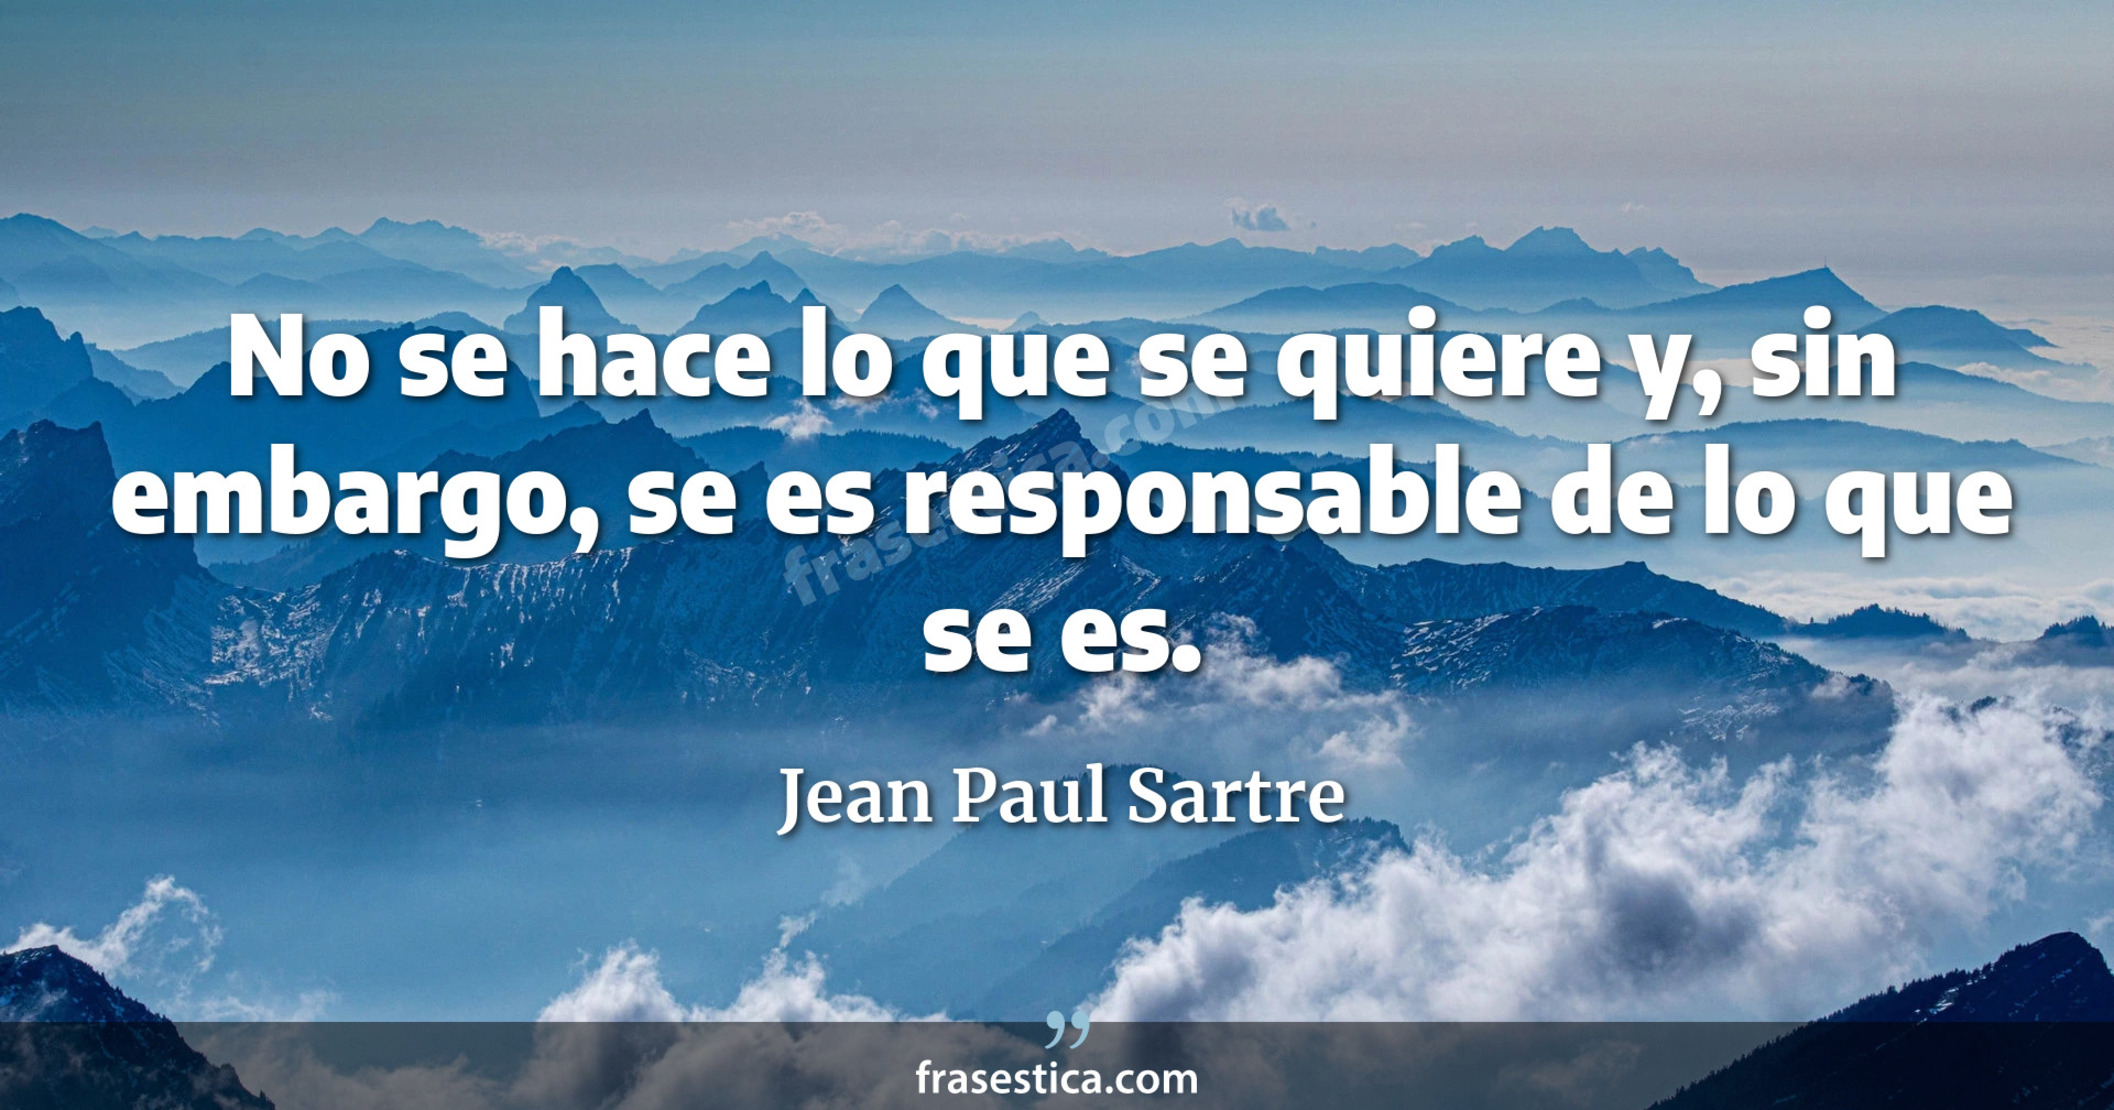 No se hace lo que se quiere y, sin embargo, se es responsable de lo que se es. - Jean Paul Sartre